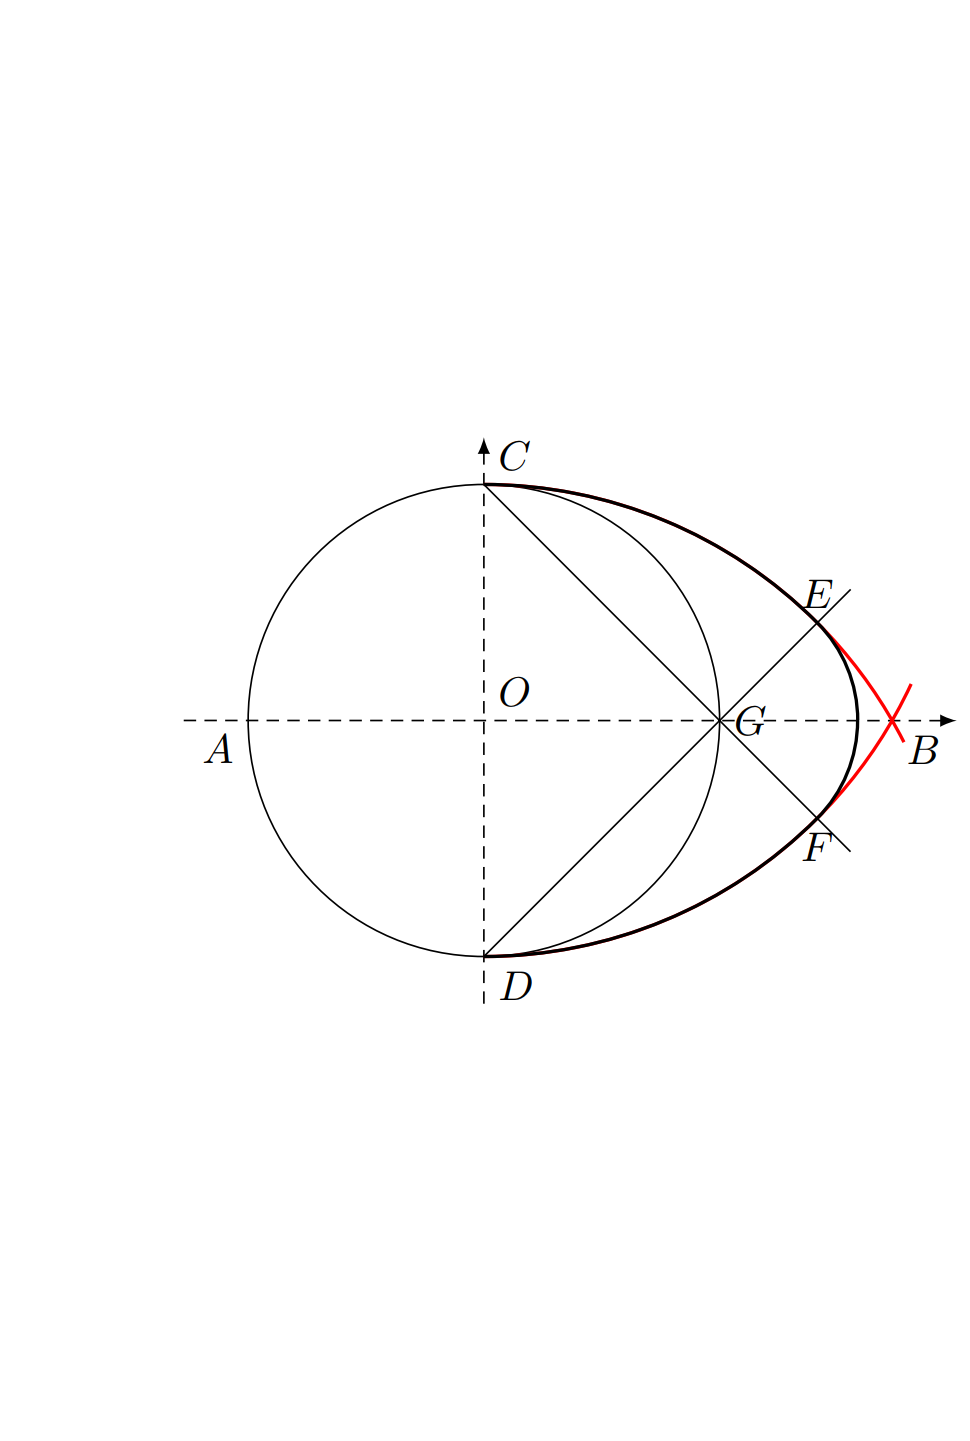 tikz绘图示例——尺规作图: 鸭蛋圆形的近似画法